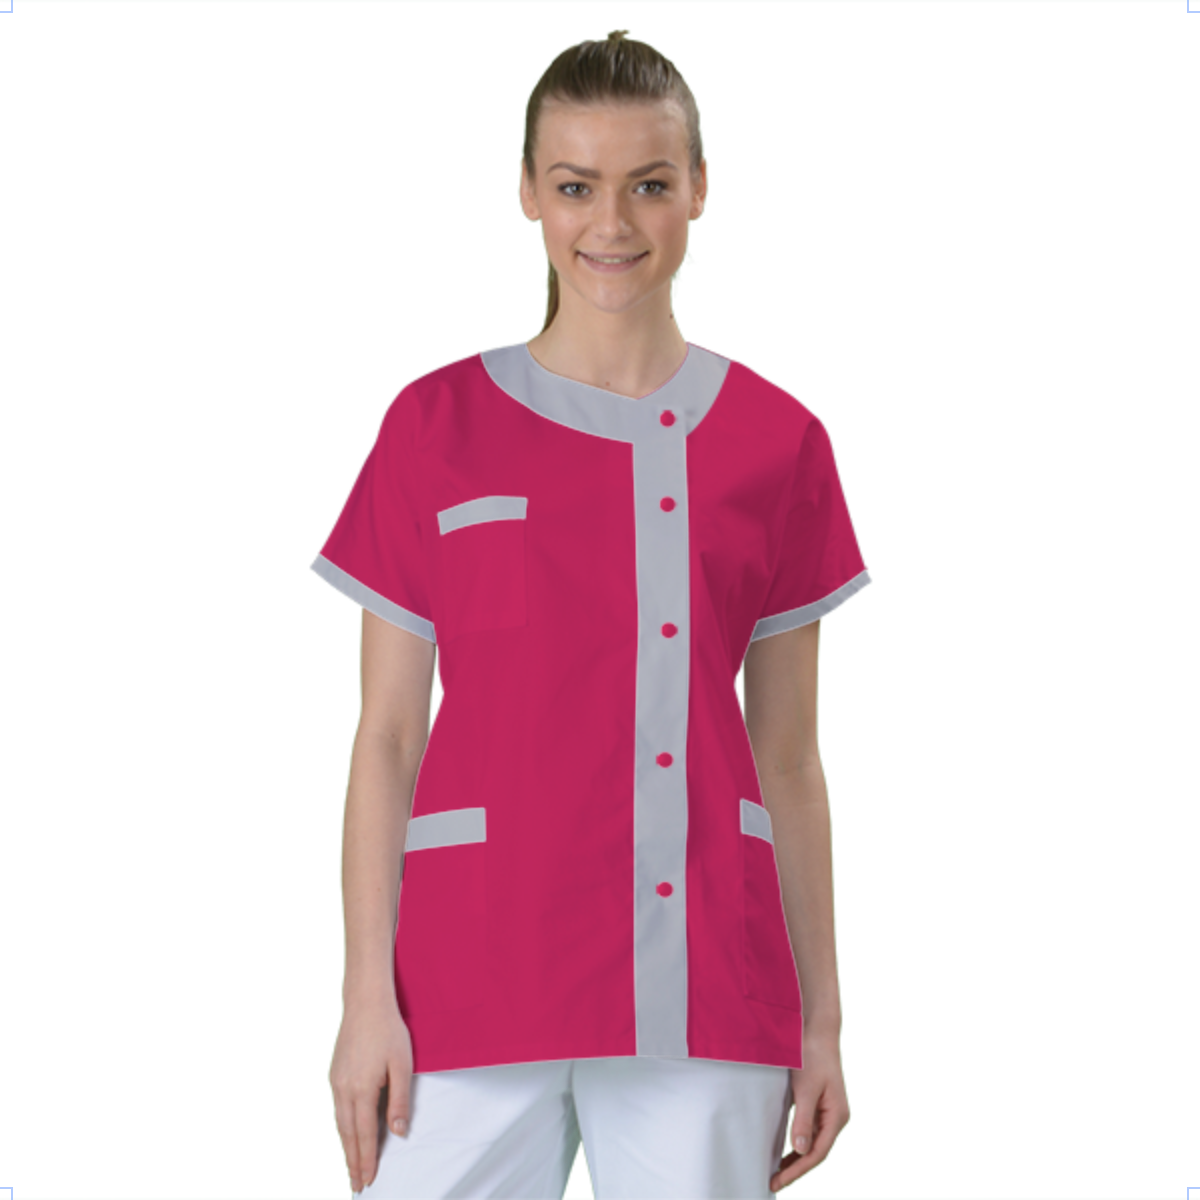 blouse-medicale-col-carre-a-personnaliser acheté - par Dorothee - le 16-05-2018